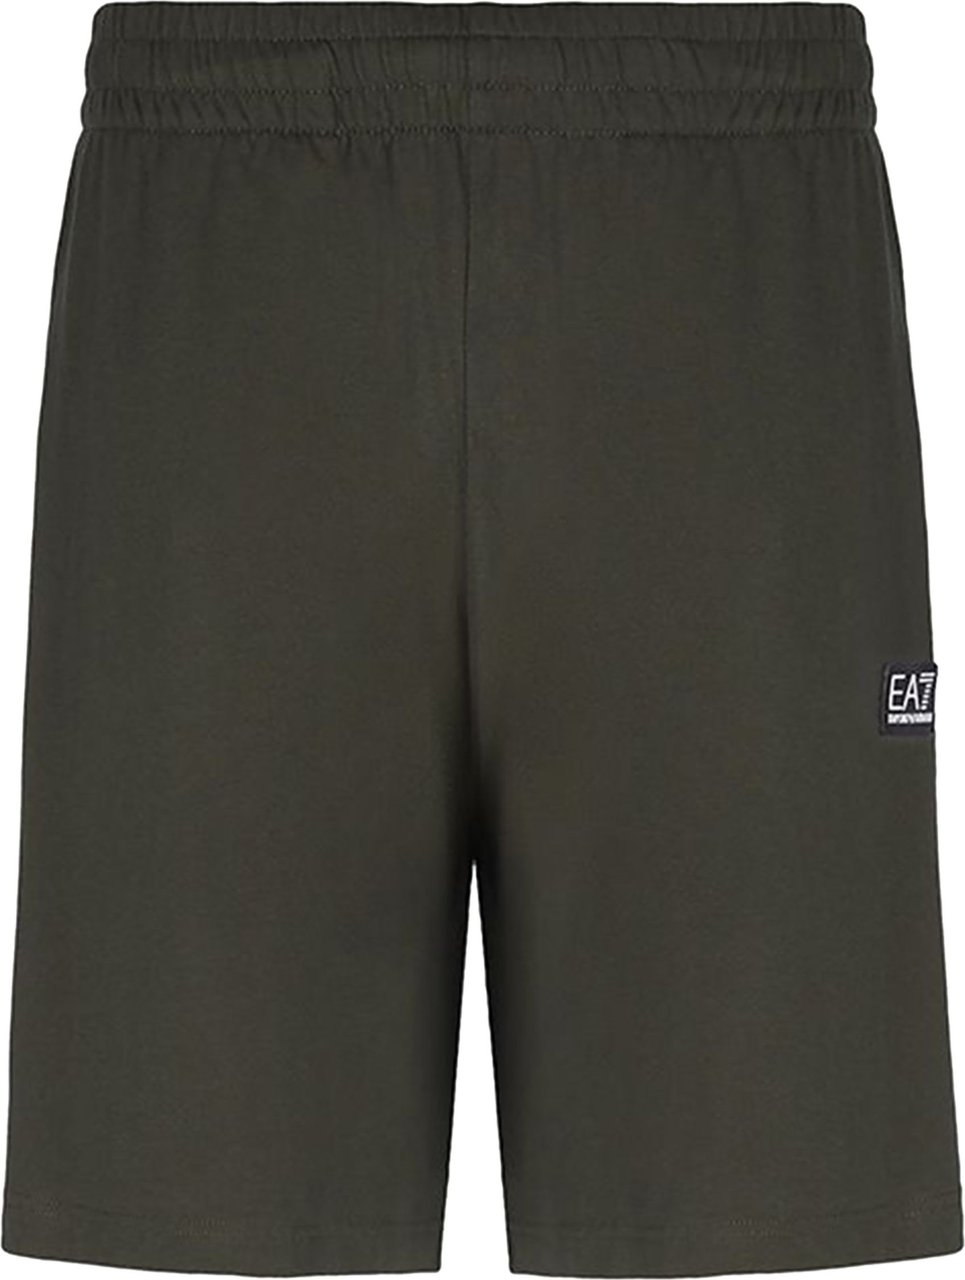 EA7 Shorts Groen